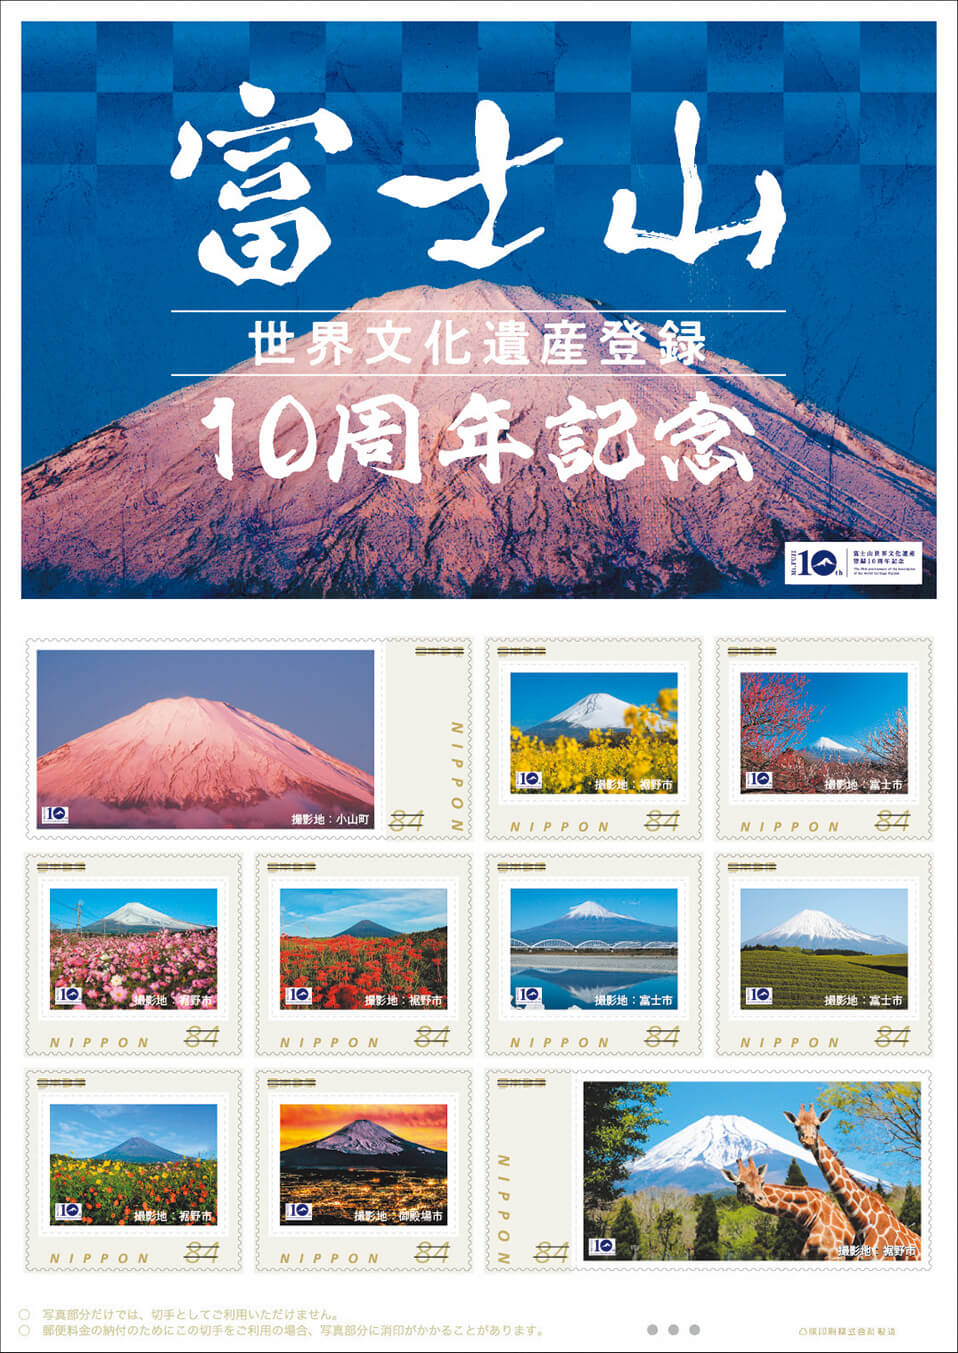 オリジナルフレーム切手「富士山世界文化遺産登録10周年記念」